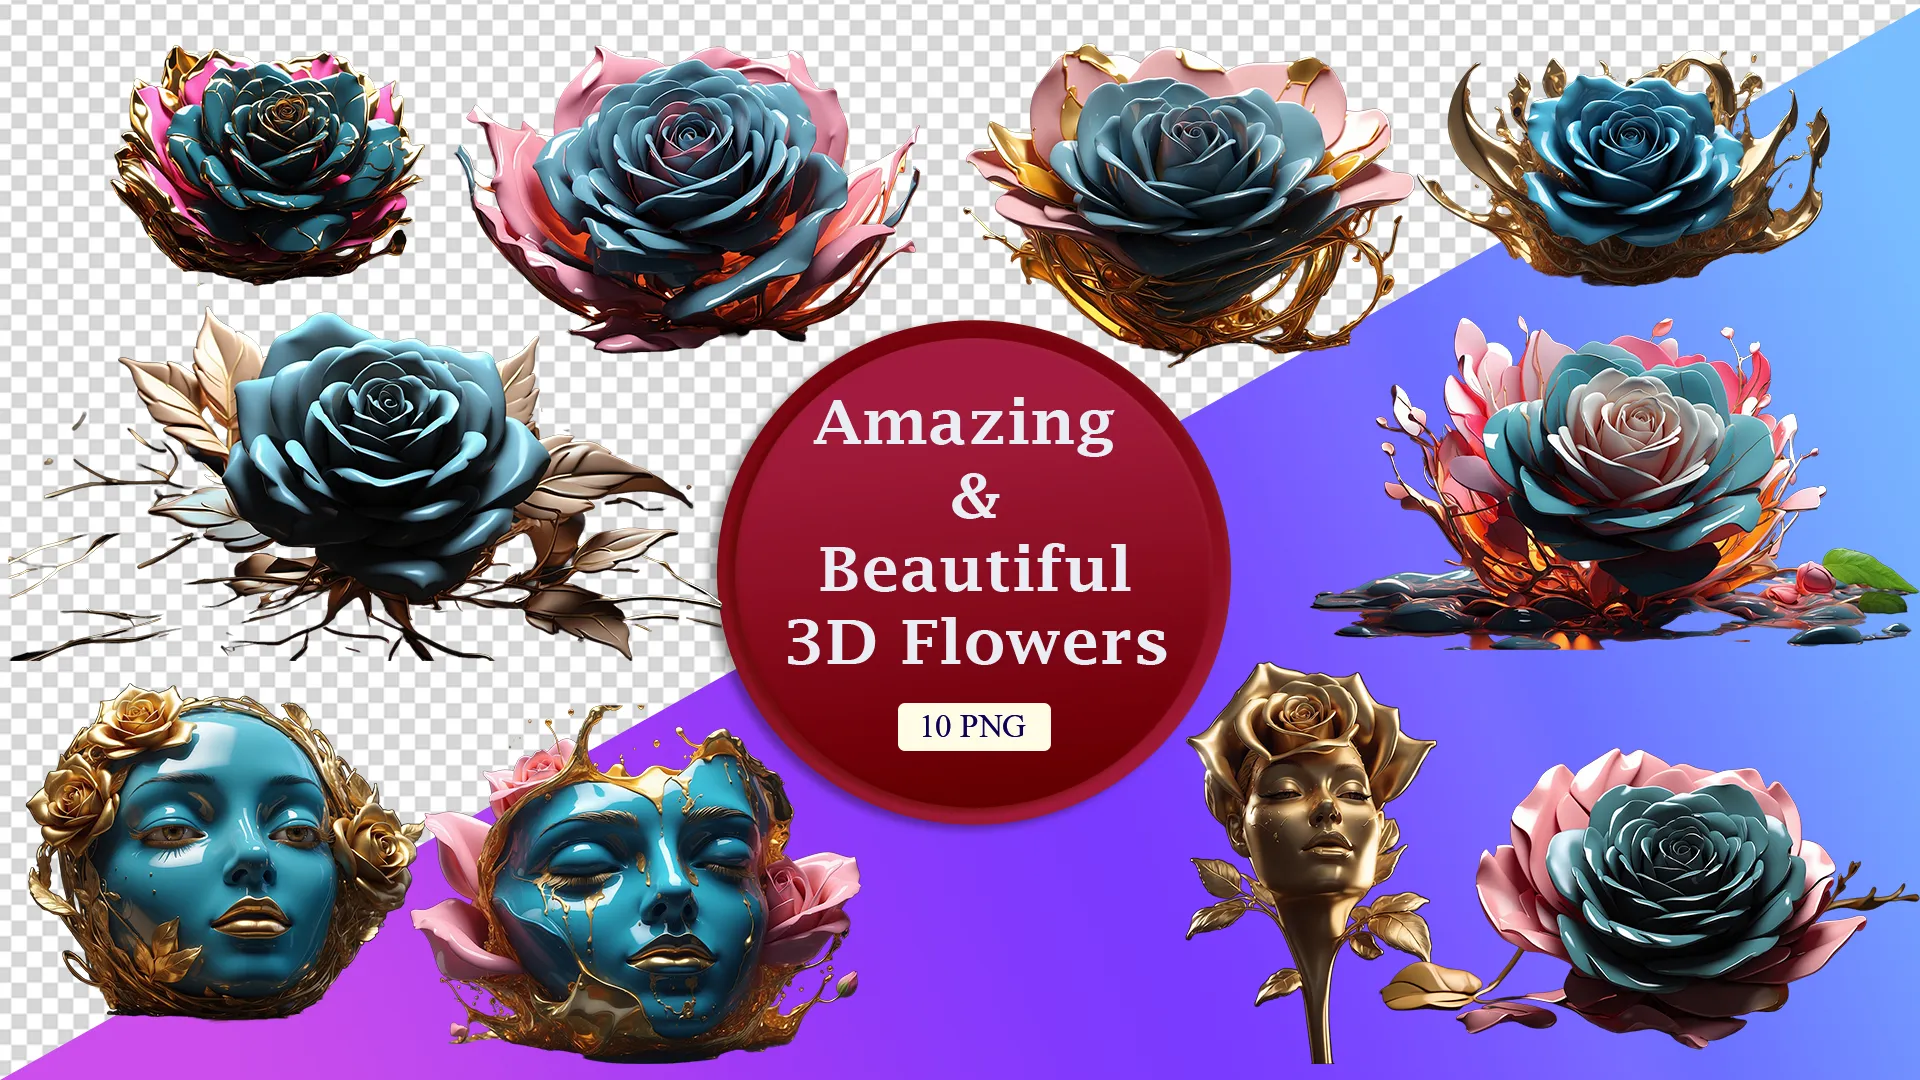 Elegant Floral Art and Surreal Faces PNG Bundle image